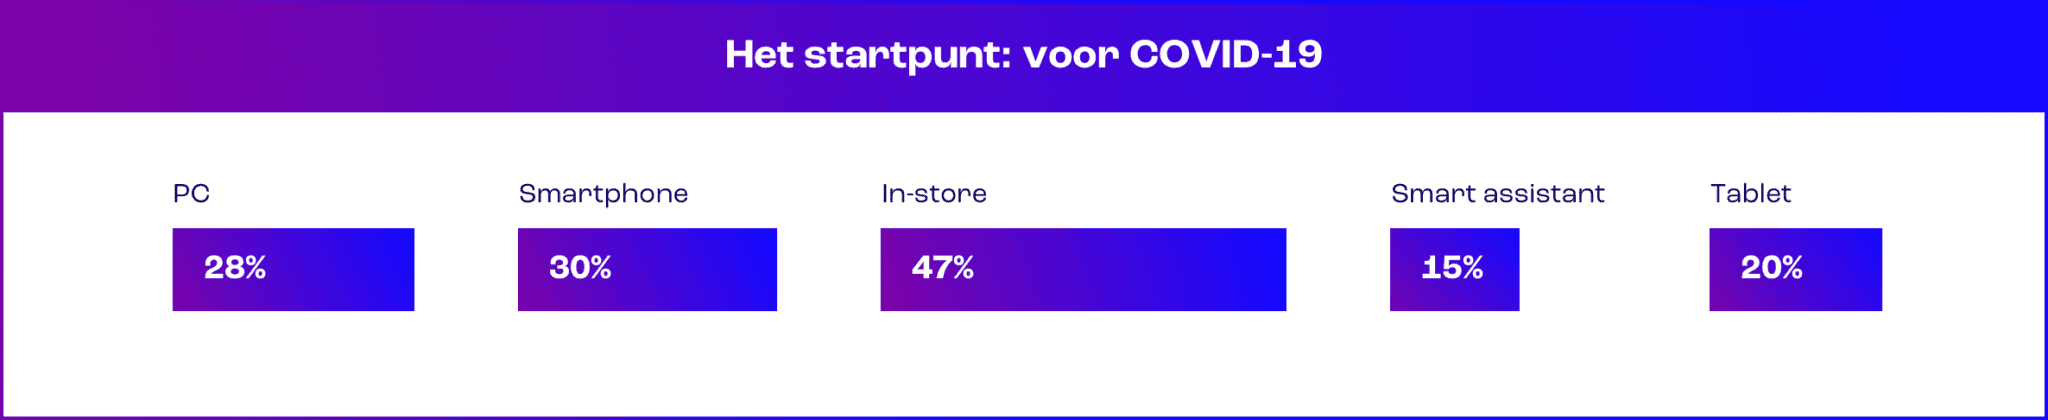 Digitale platformen voor COVID | Bconnect Live Chat